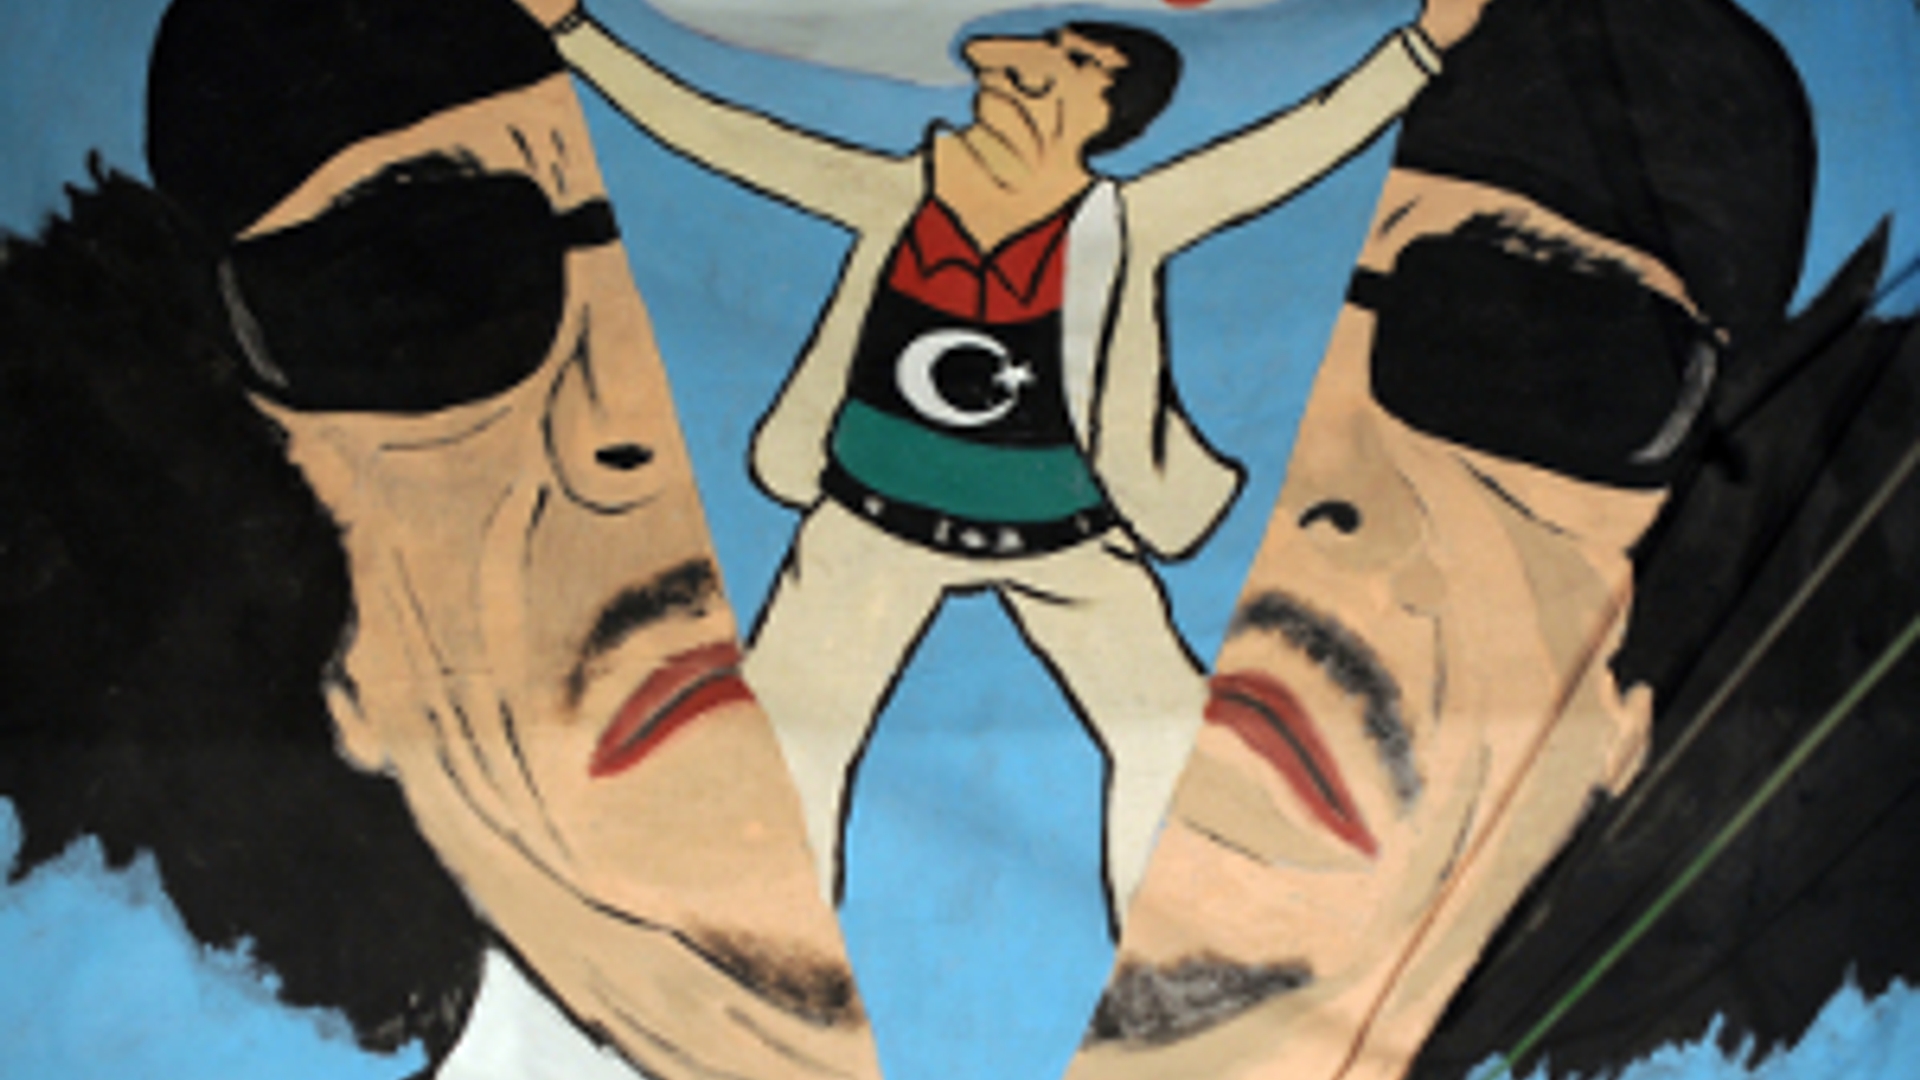 ANP-Khadaffi_muurschildering300.jpg